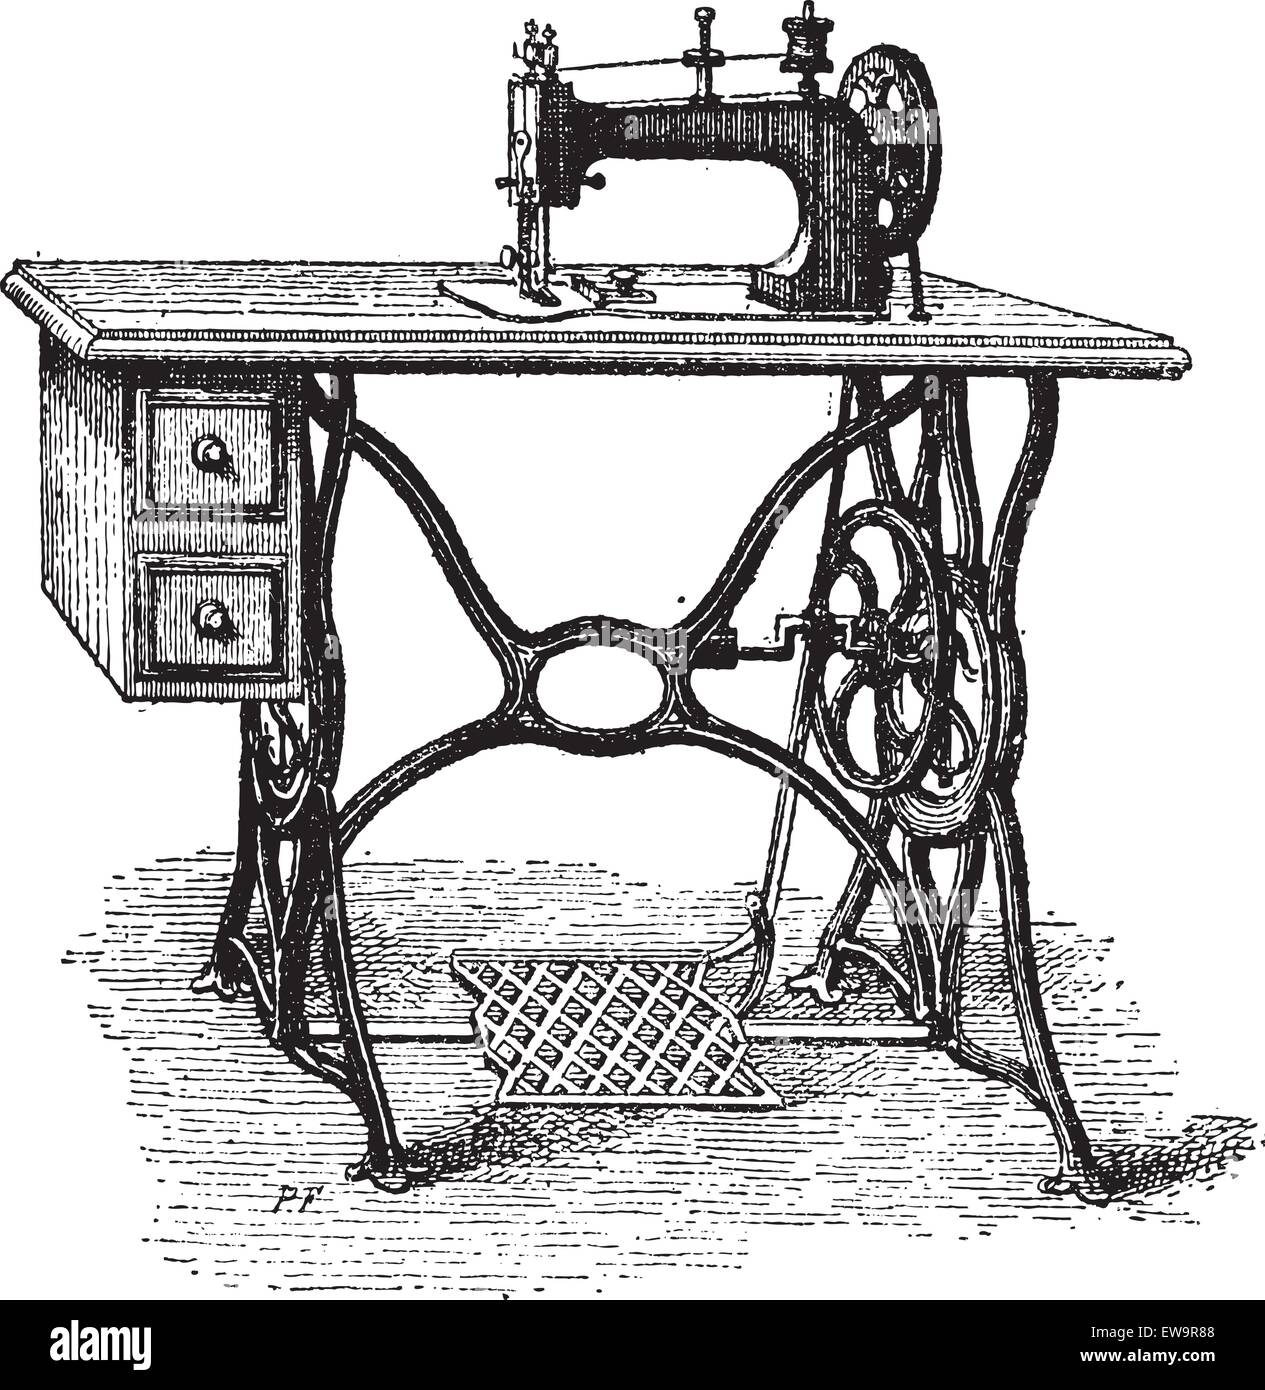 Dibujo a Mano De Costura Overlock Retro Sketch Para Su Diseño. Una  Ilustración Moderna De Una Máquina De Coser Sobre Un Fondo Blan Stock de  ilustración - Ilustración de aguja, costura: 216032577